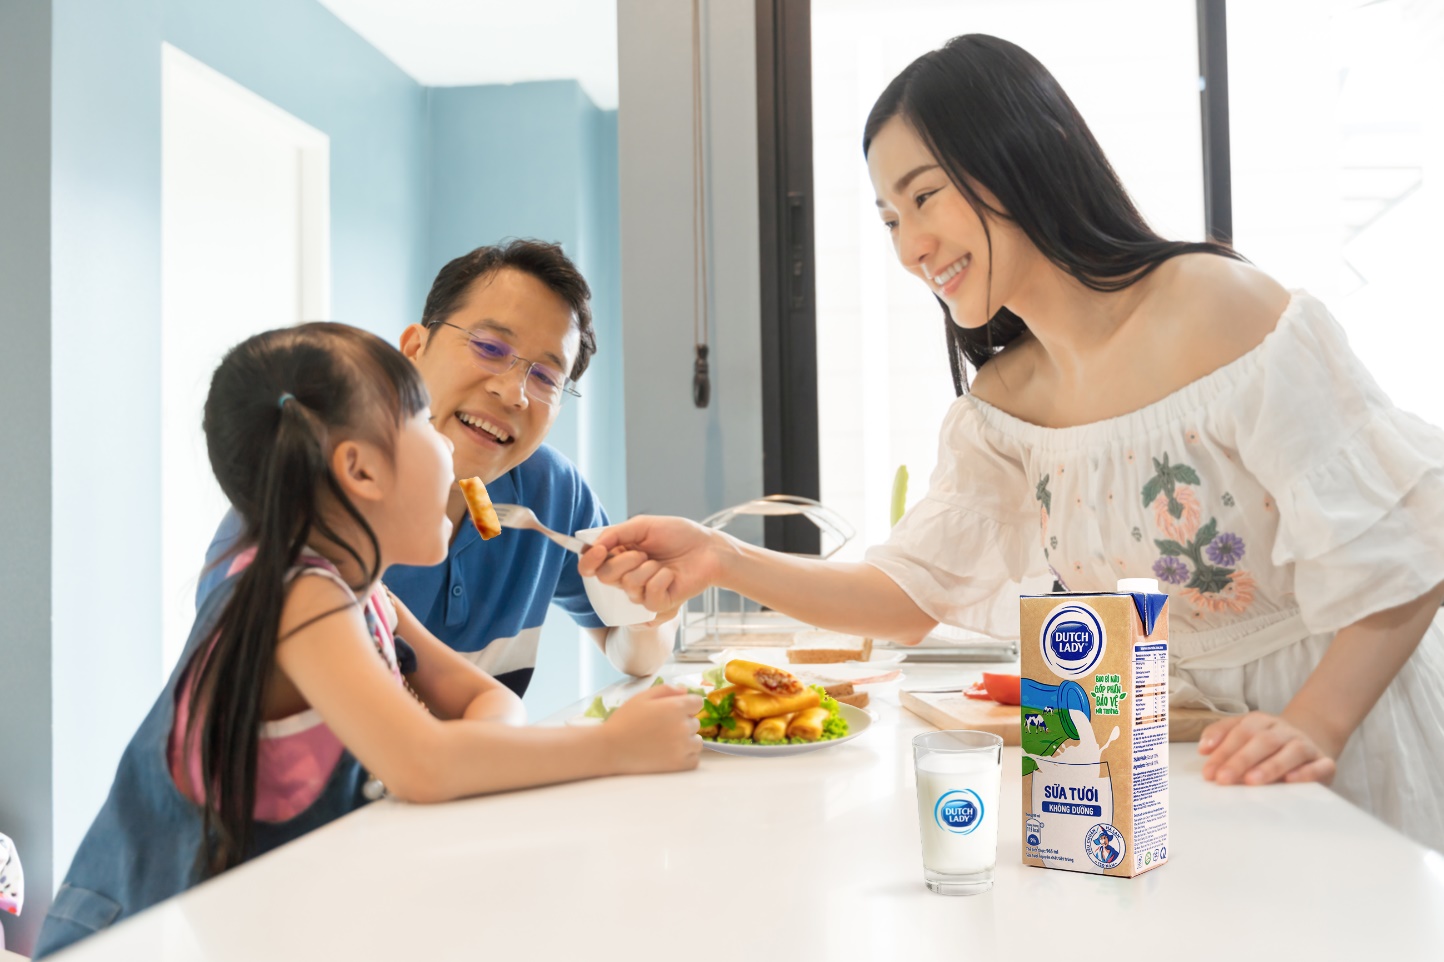 Chuyên gia làm rõ nghịch lý dinh dưỡng 90-50 và quan niệm về bữa sáng đủ chất cho trẻ - Ảnh 4.